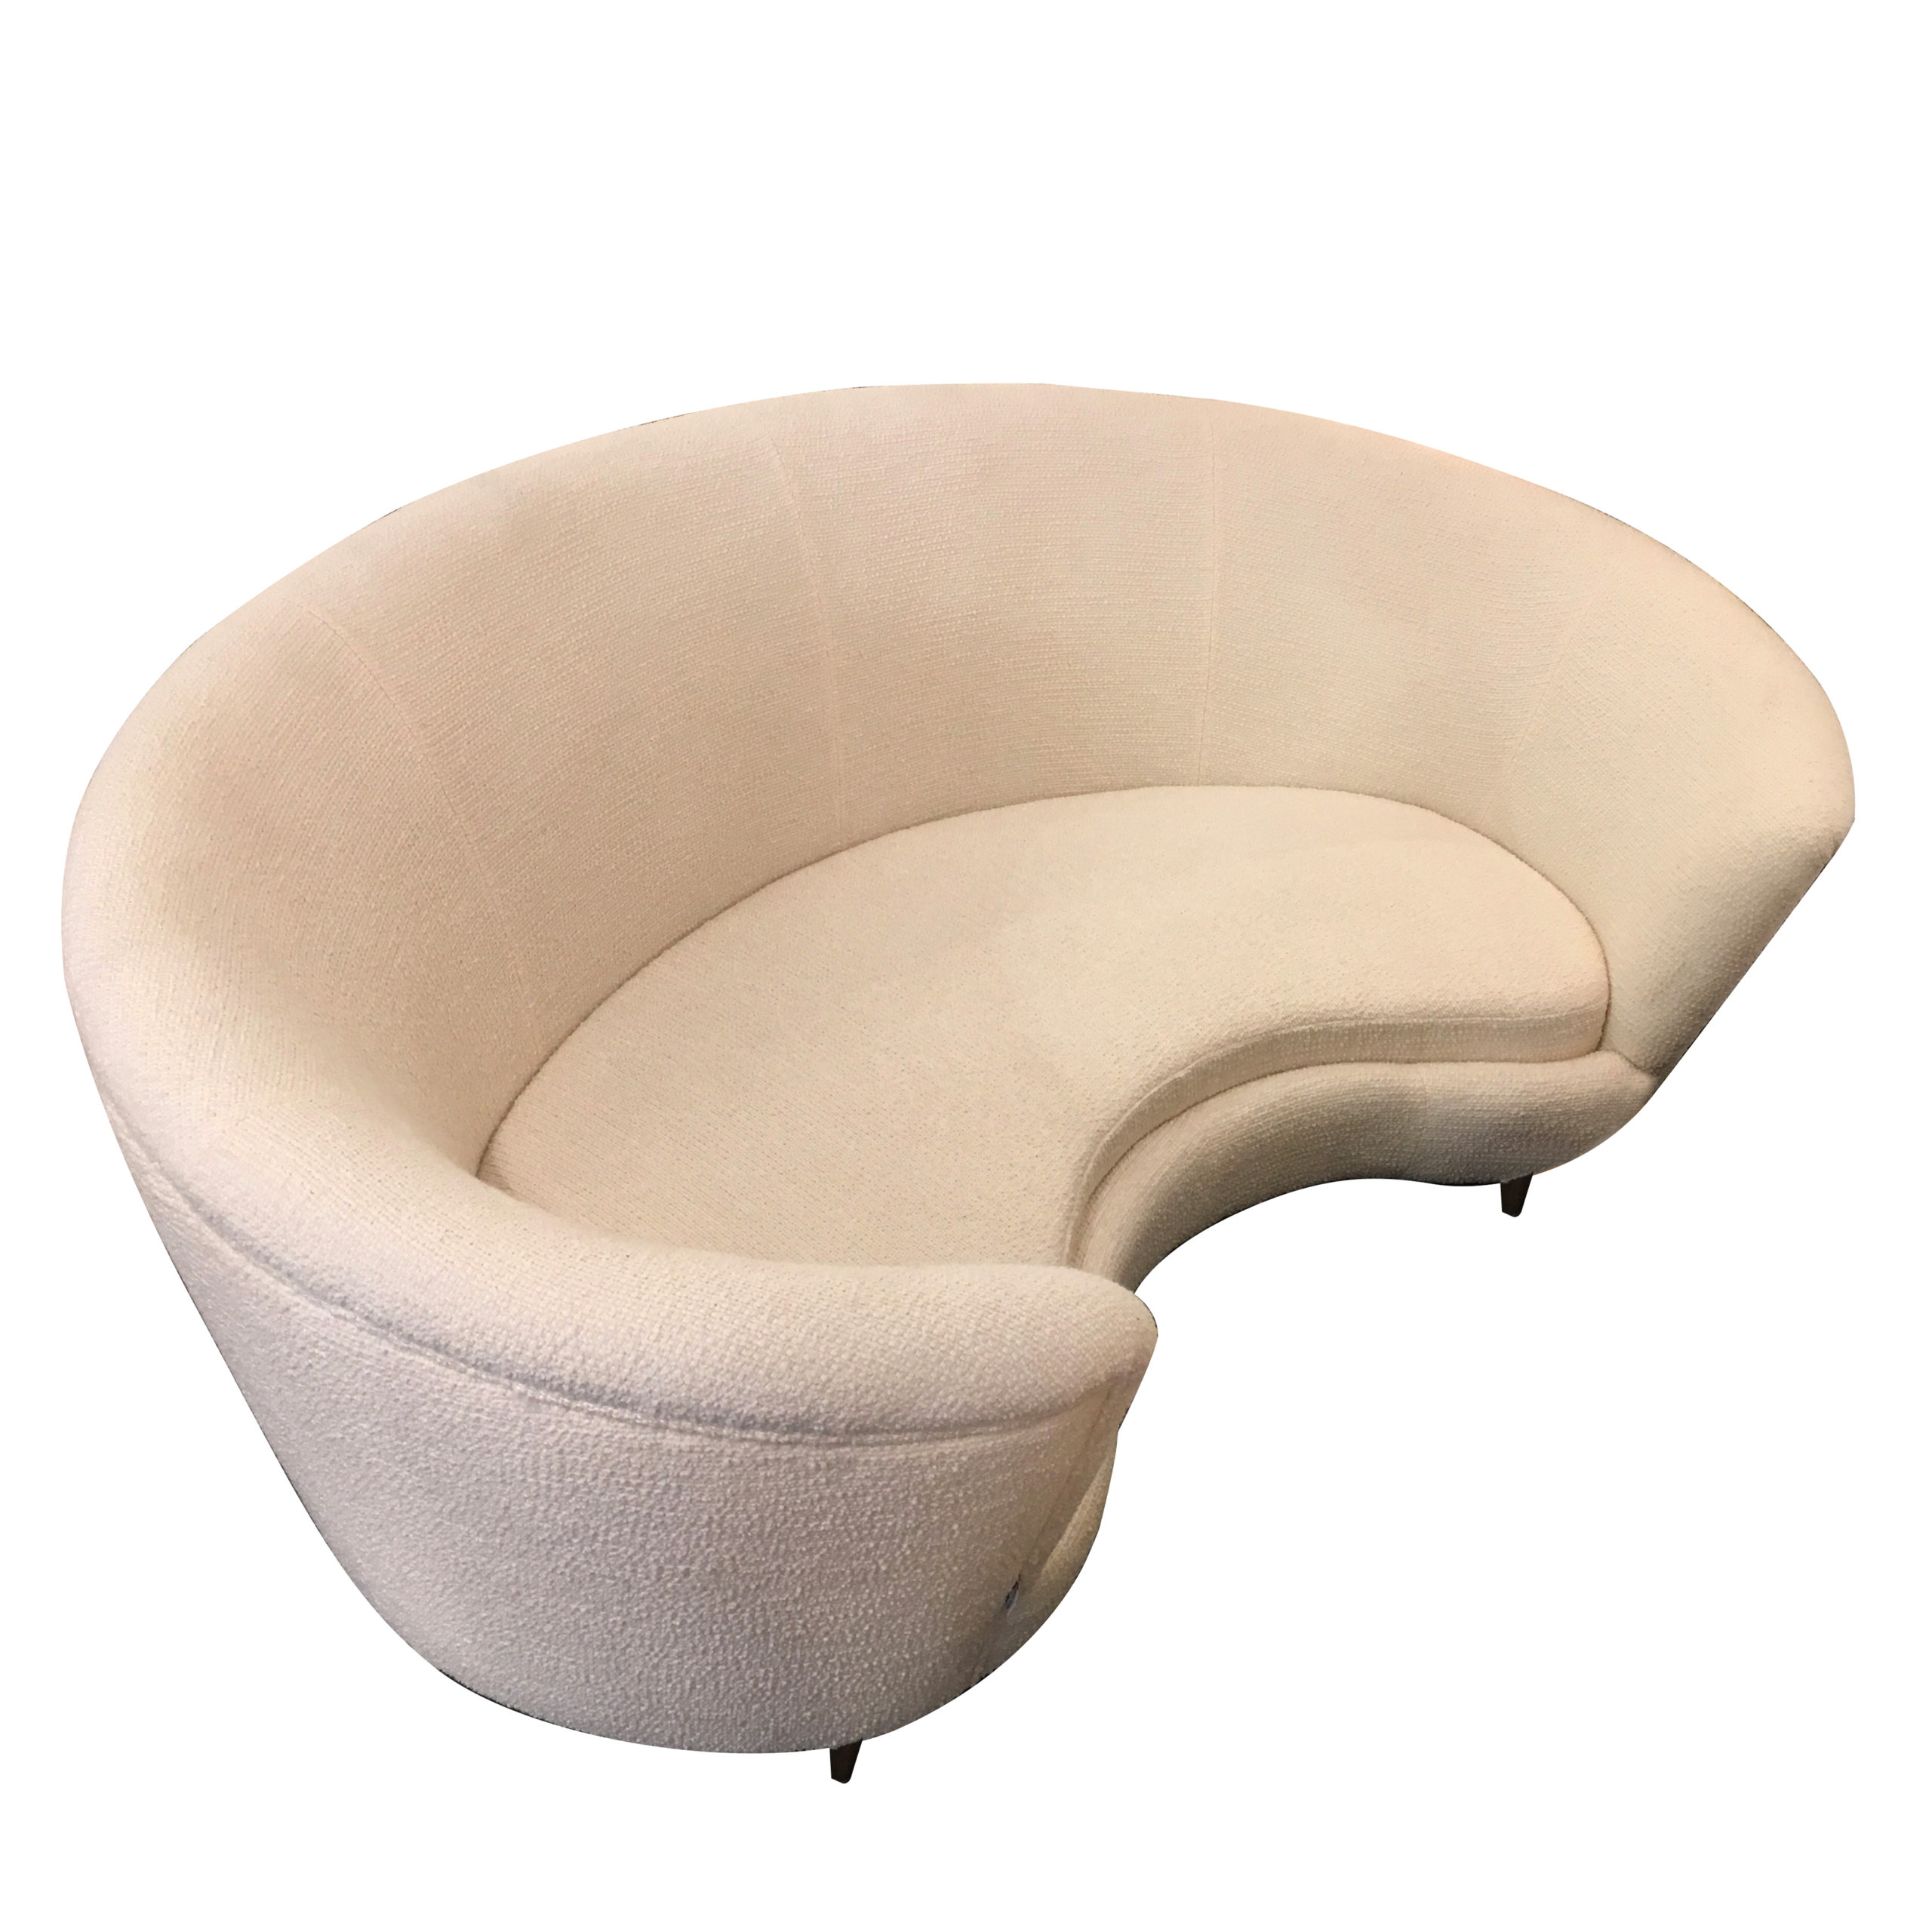 couch⎮Bean sofa ⎮ Handmade ⎮ white sofa ⎮ art deco ⎮ loopback tissu